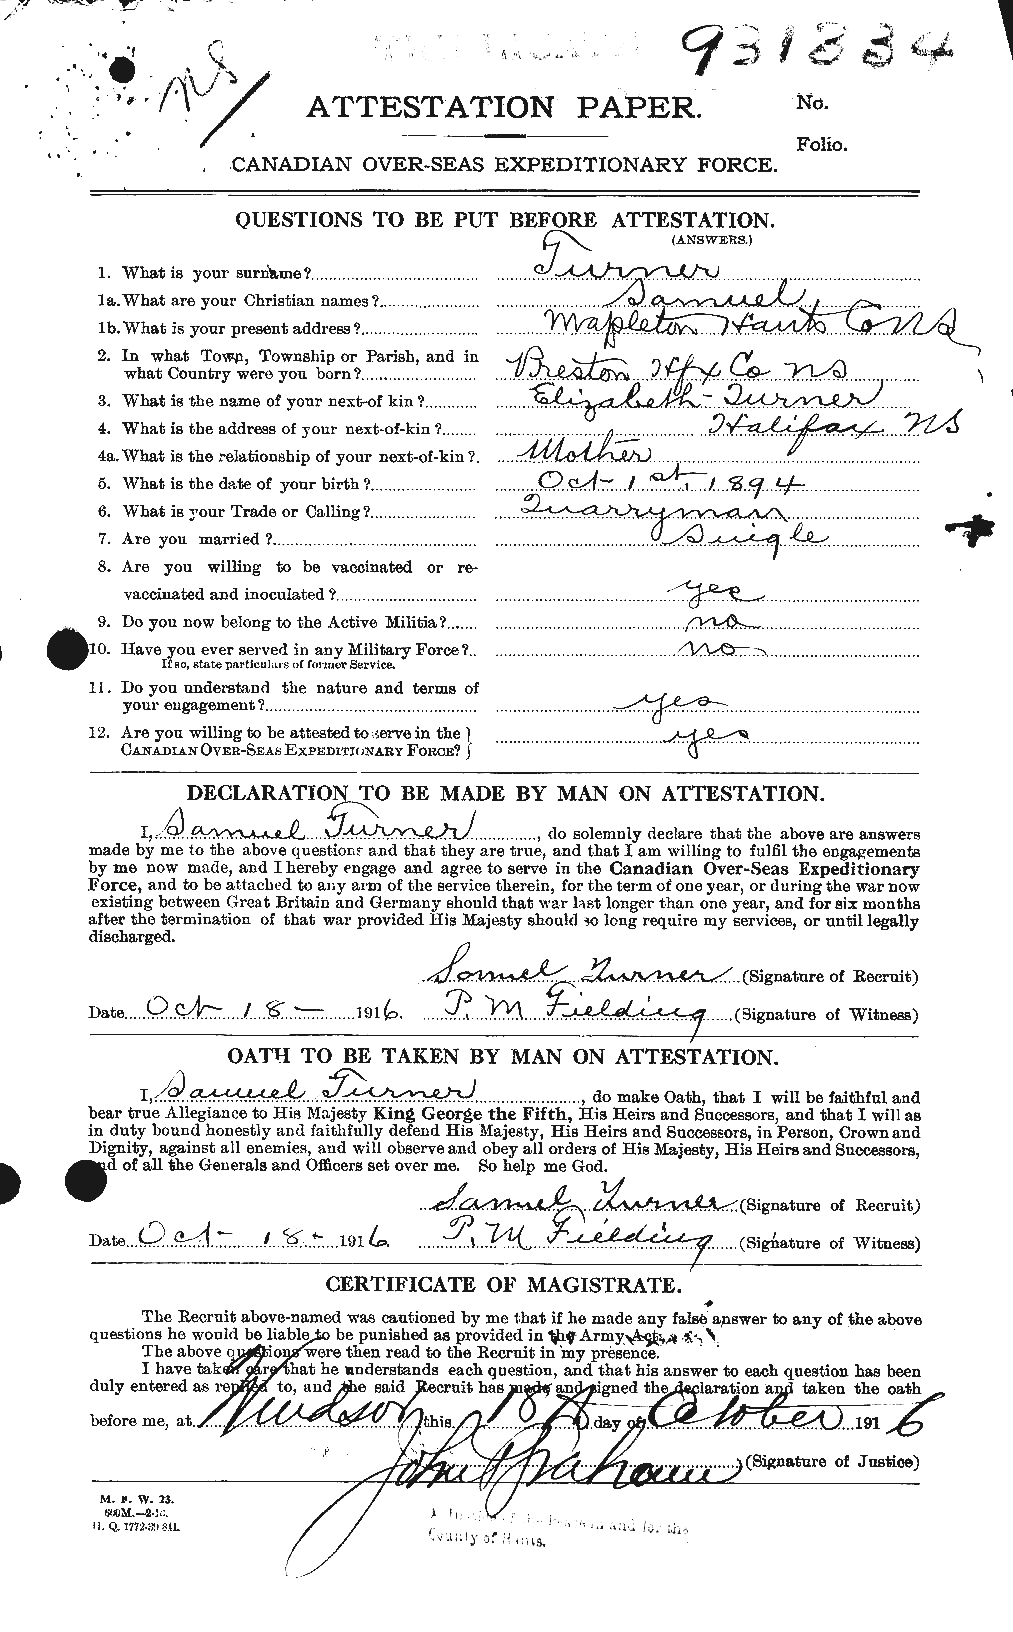 Dossiers du Personnel de la Première Guerre mondiale - CEC 643857a